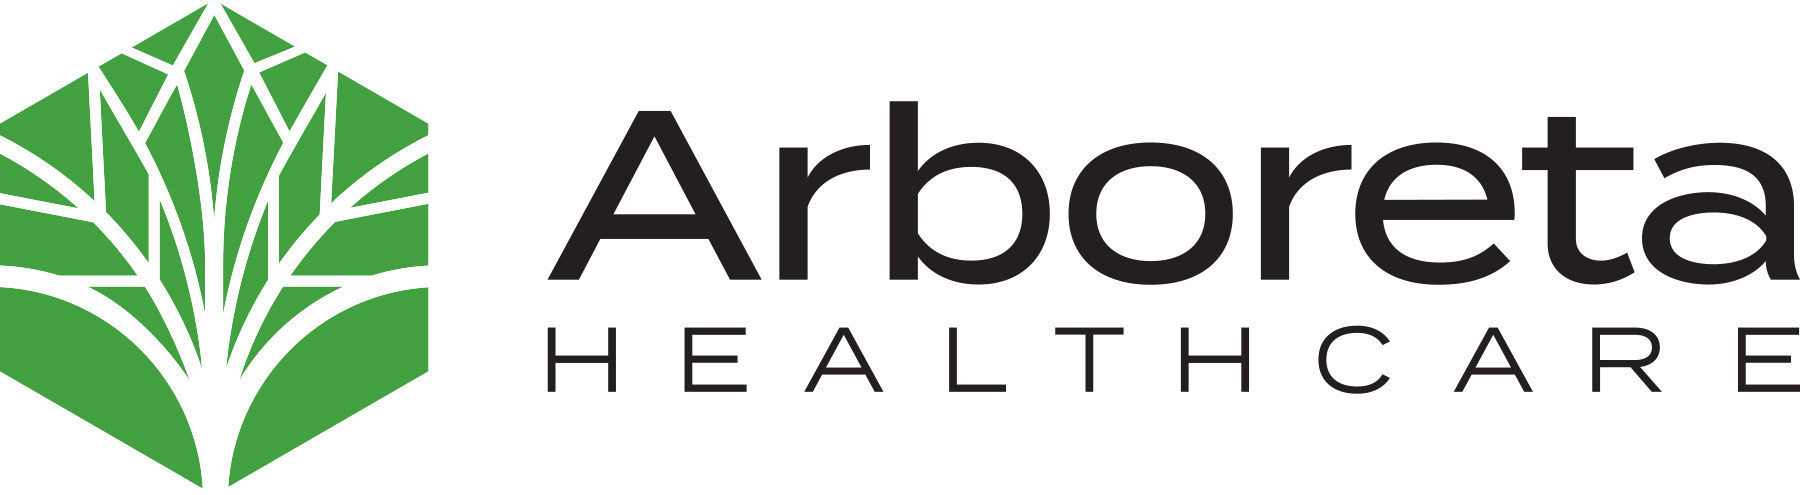 Arboreta Healthcare logo